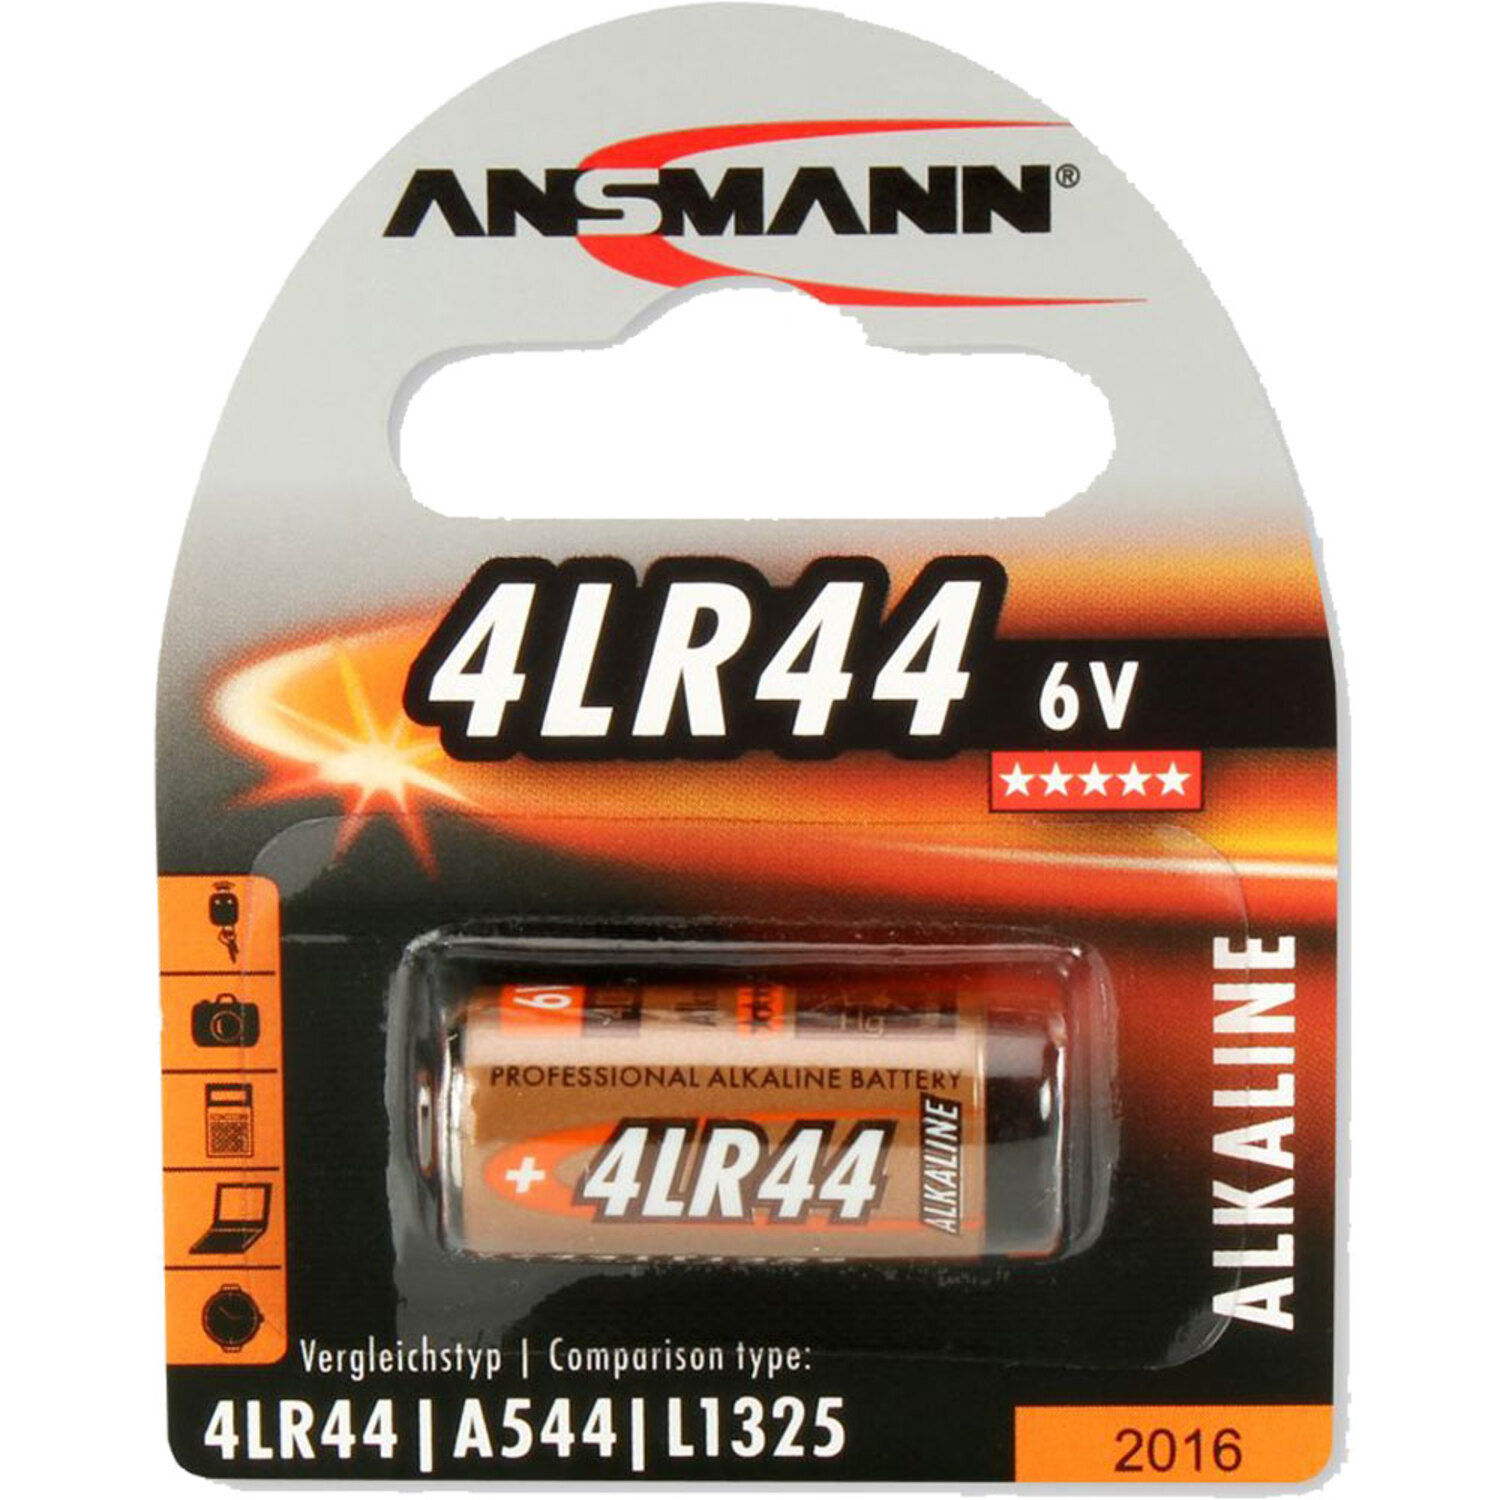 ANSMANN ANSMANN 1510-0009 Licht Stück 4LR44 6 Alkaline Batterie Batterien, Batterien Energie Strom / 6V / 1 Alkaline, Volt